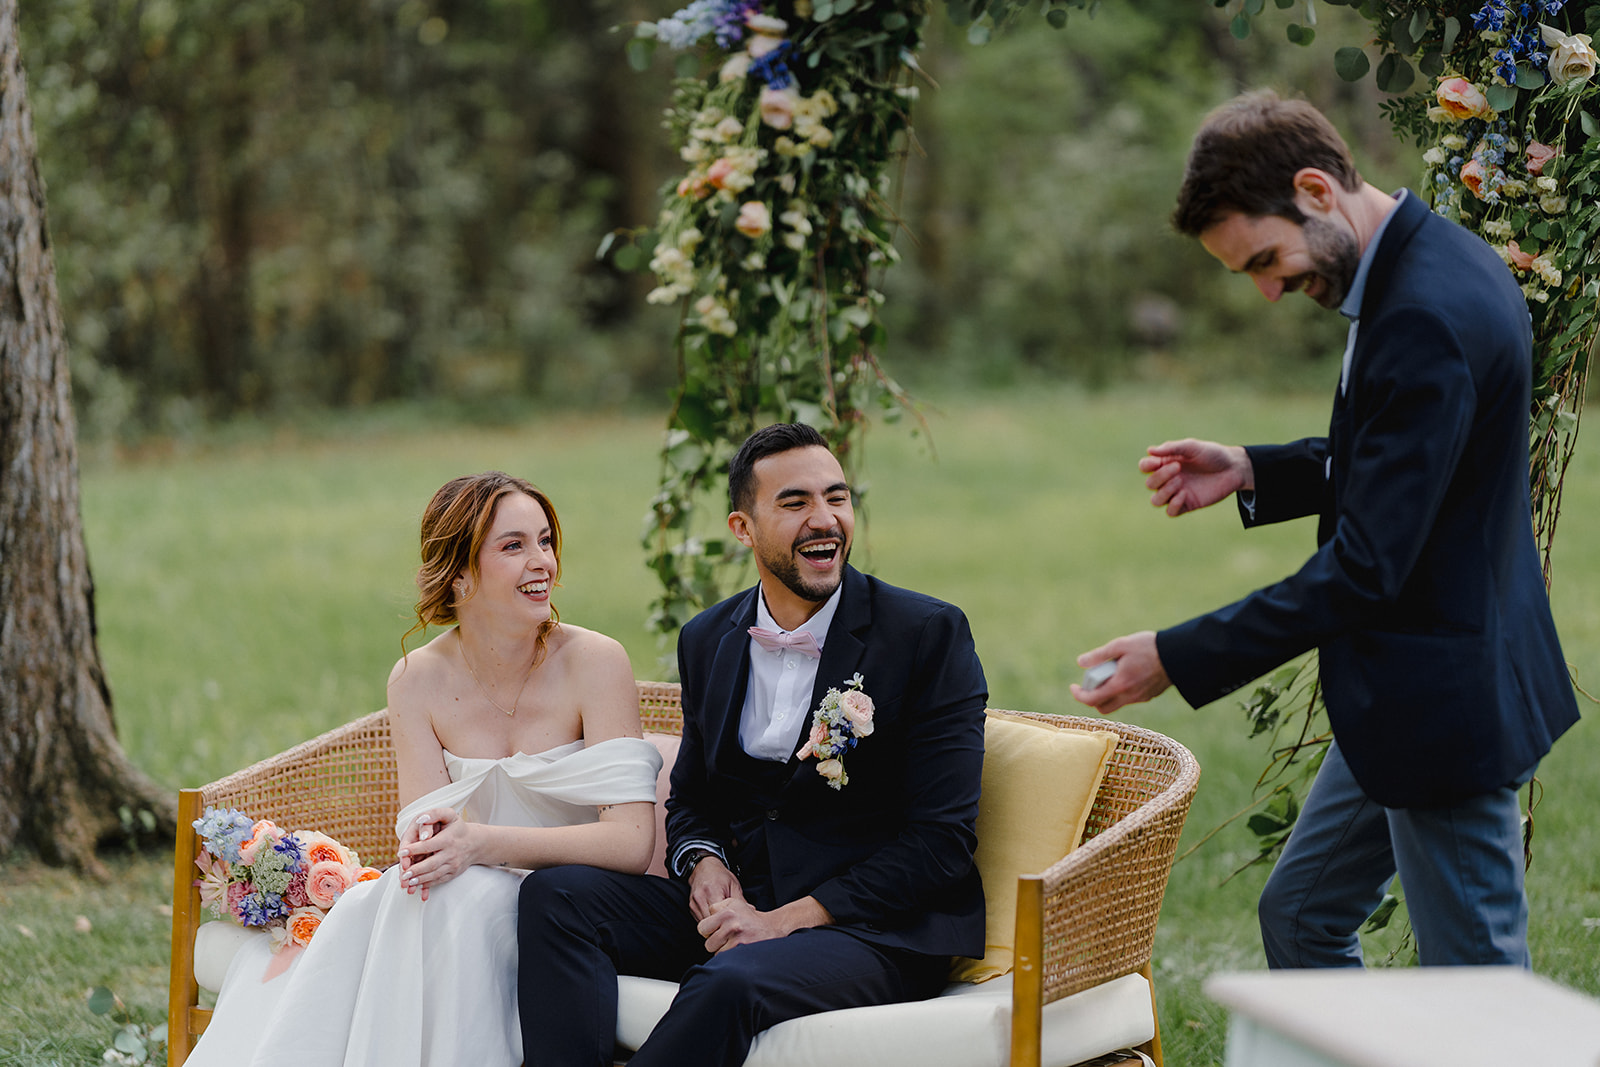 Les mariés passent un bon moment et rigolent après un tour de magie